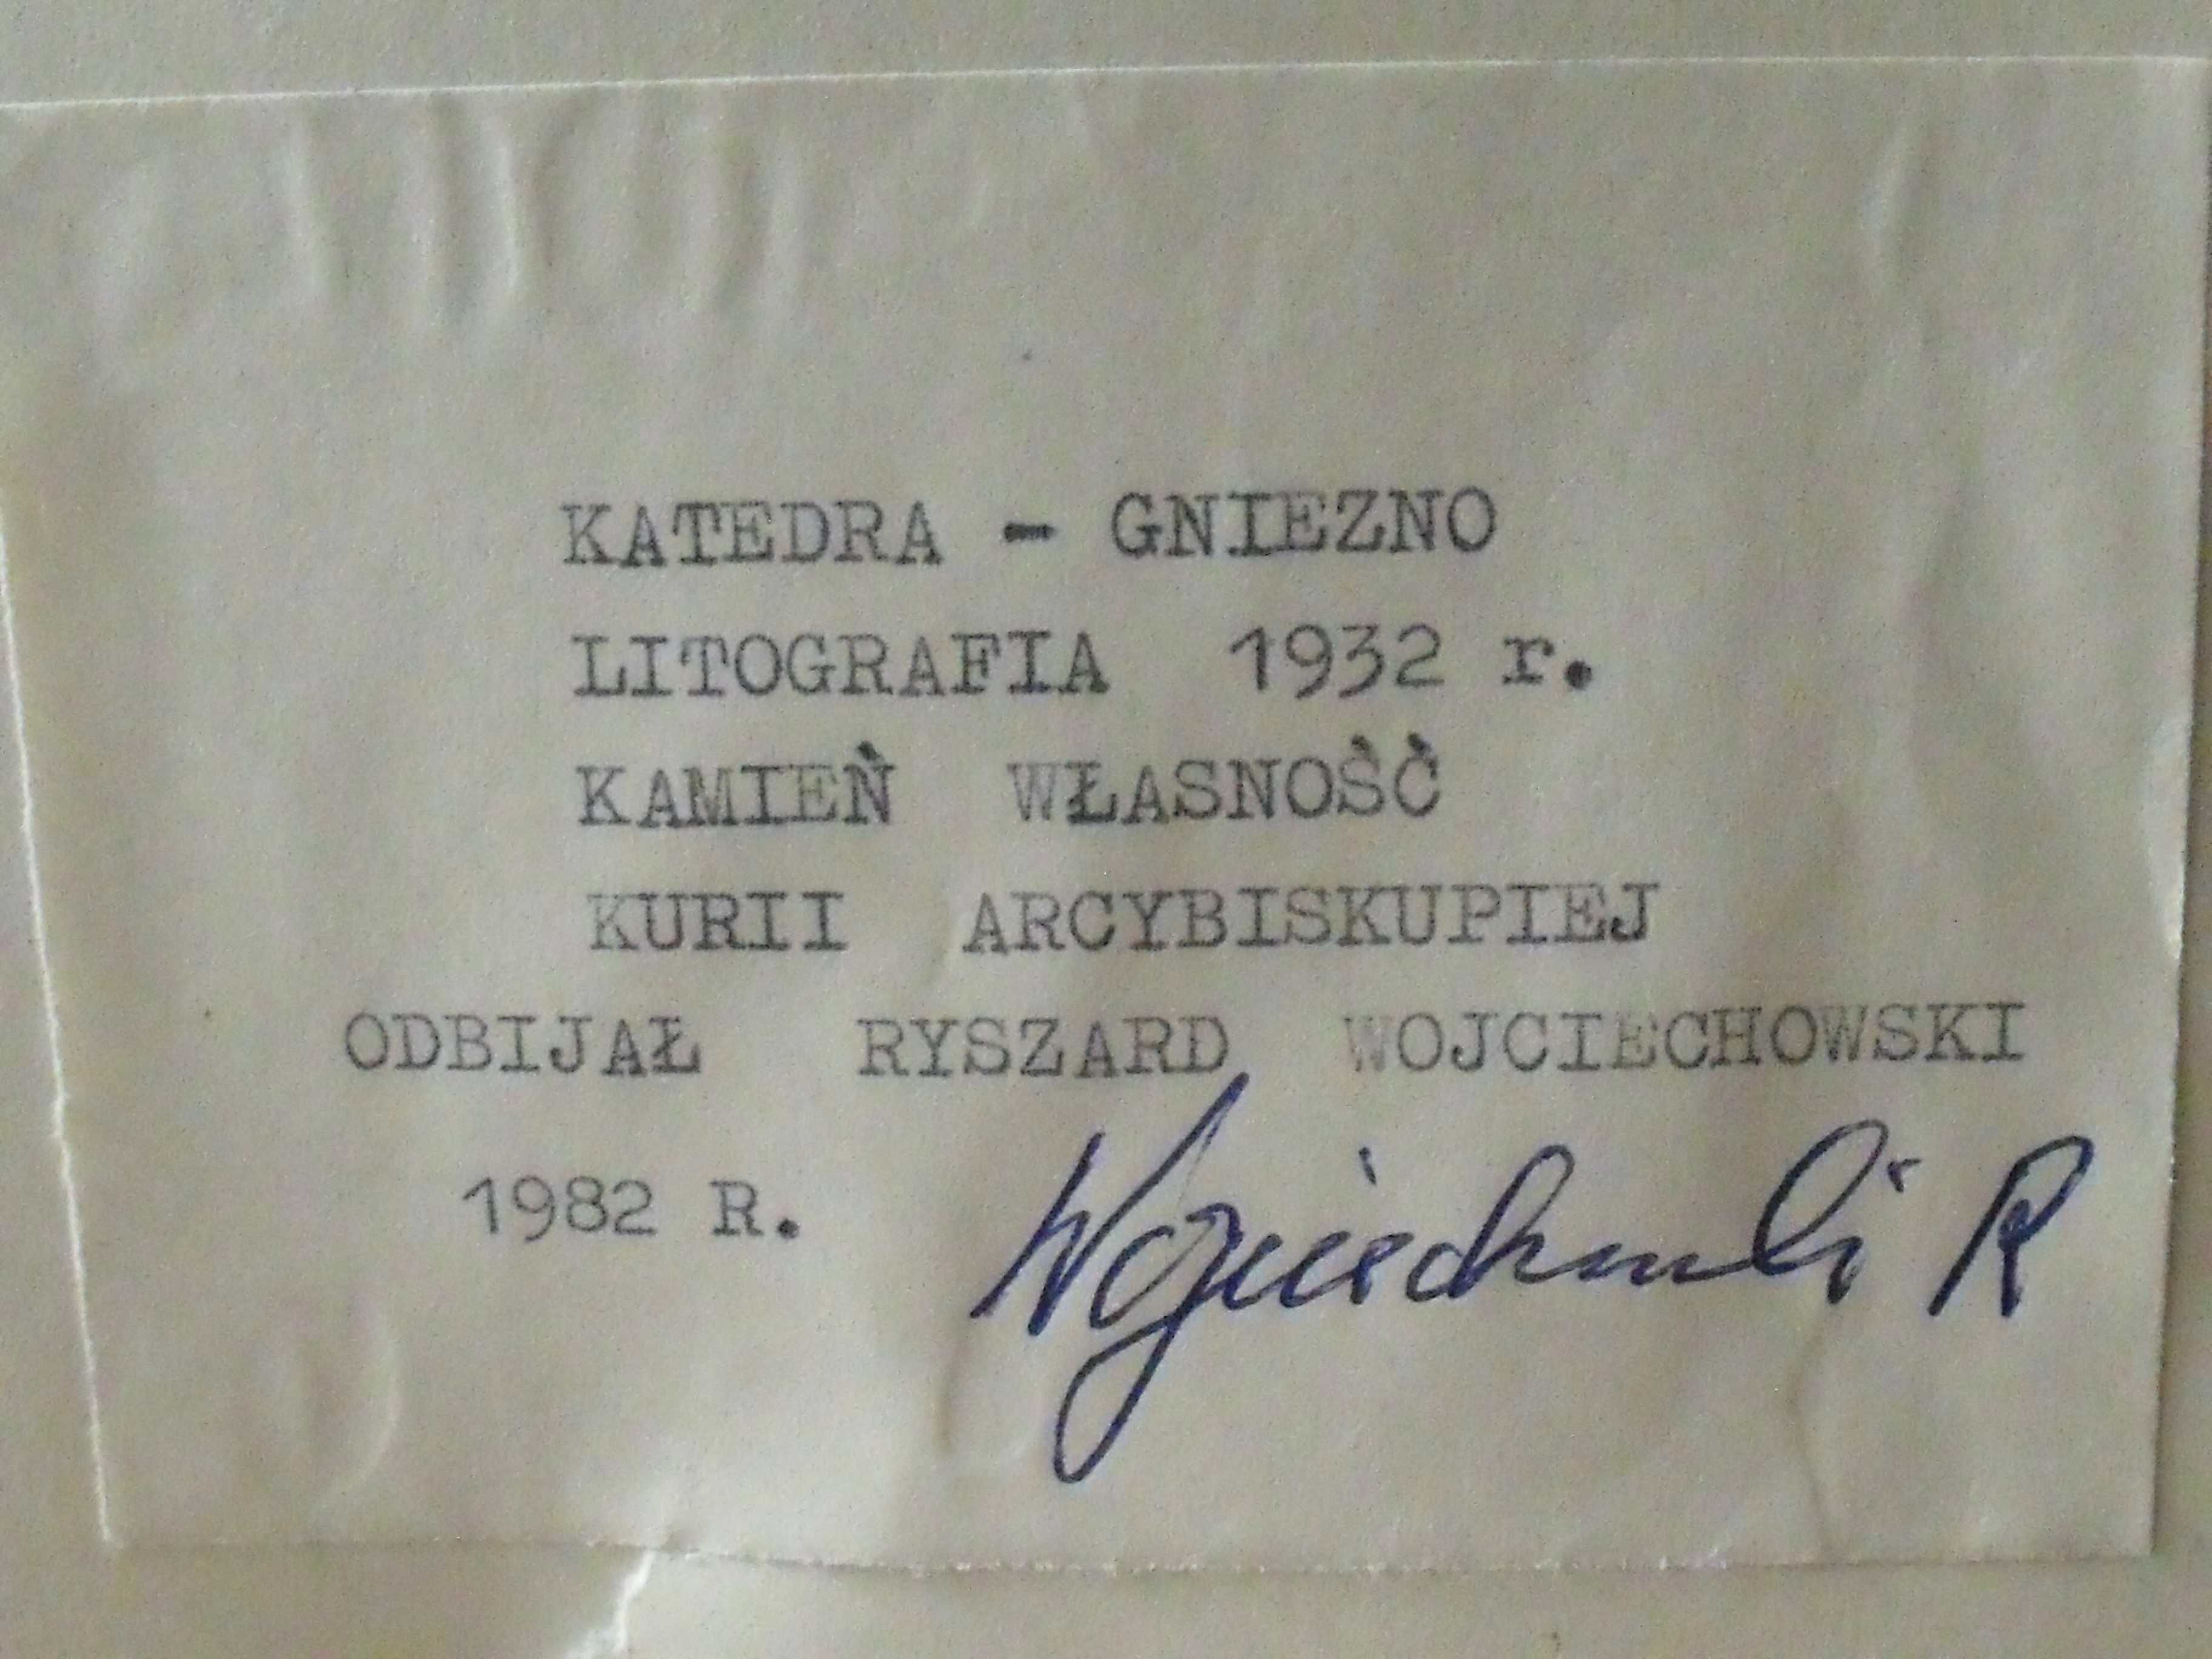 Katedra Gniezno litografia 1932